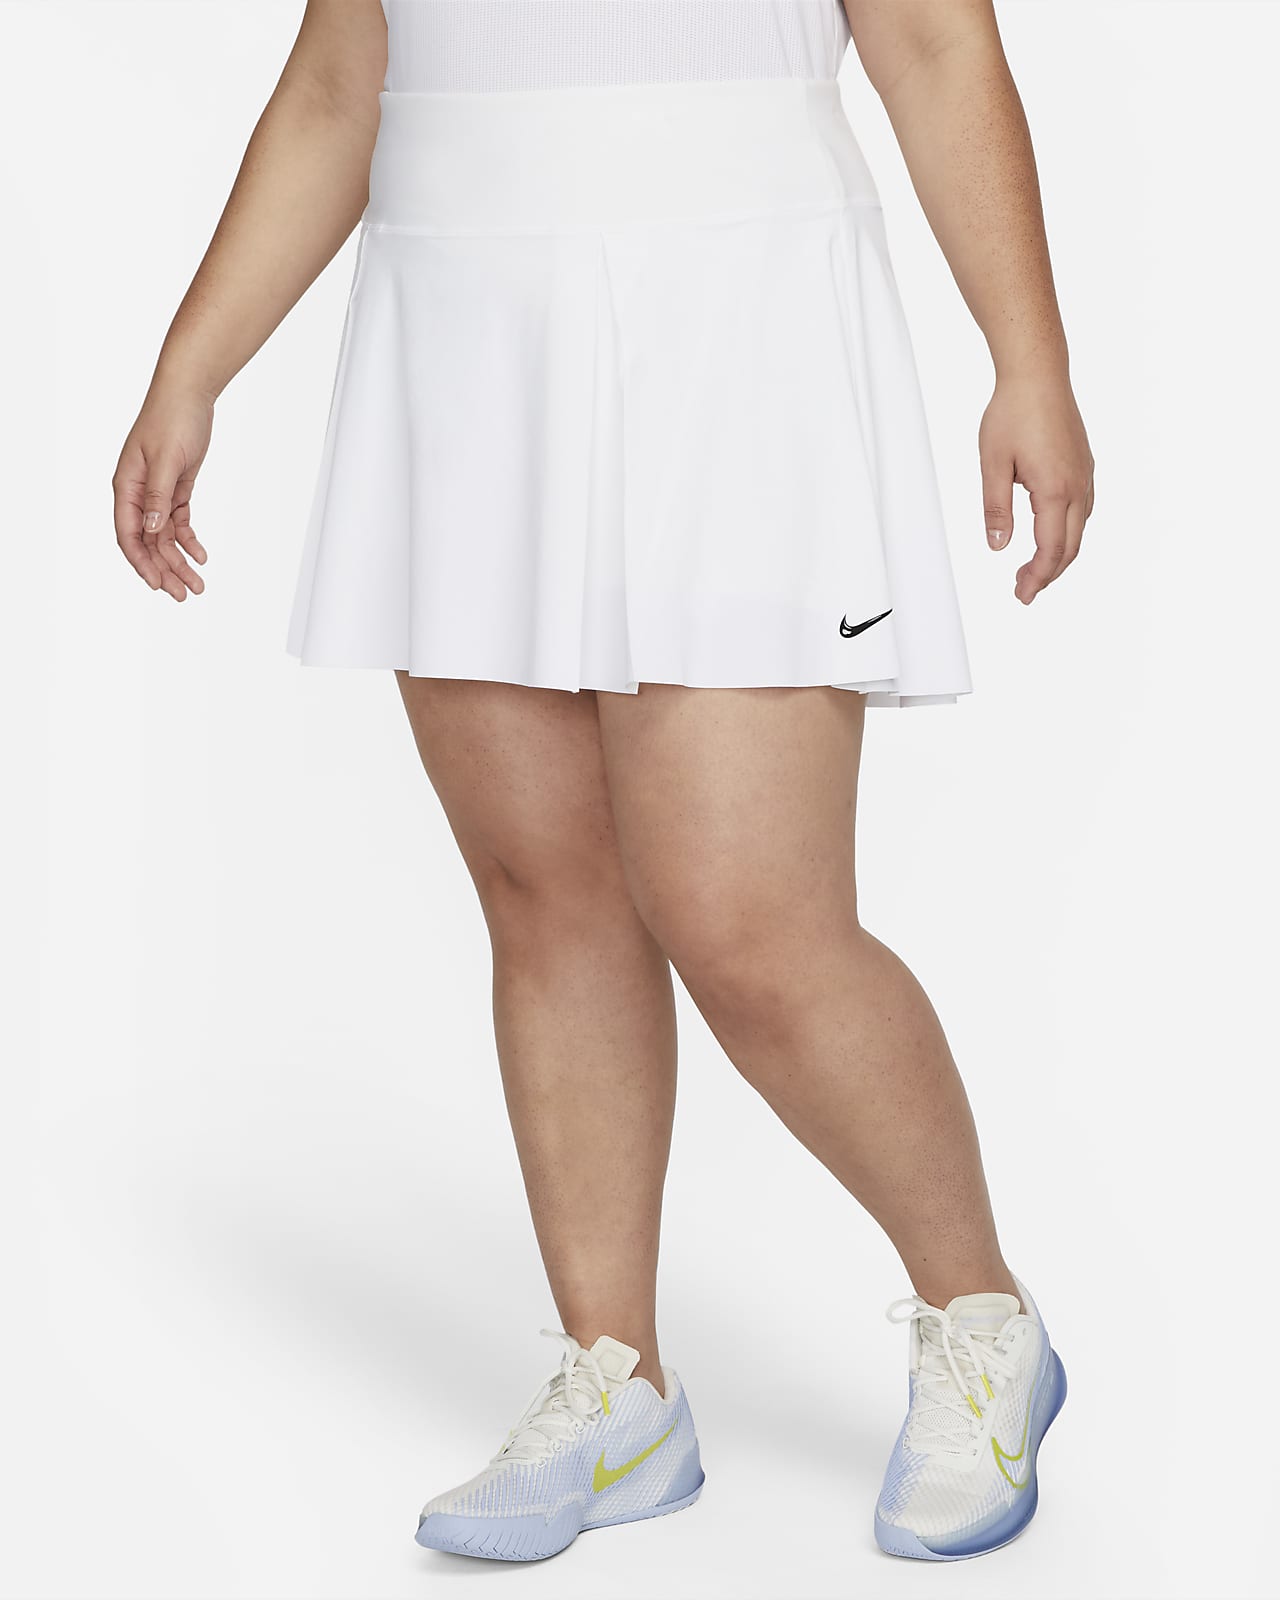 Nike Dri-FIT Advantage Women's Tennis Skirt (Plus Size)